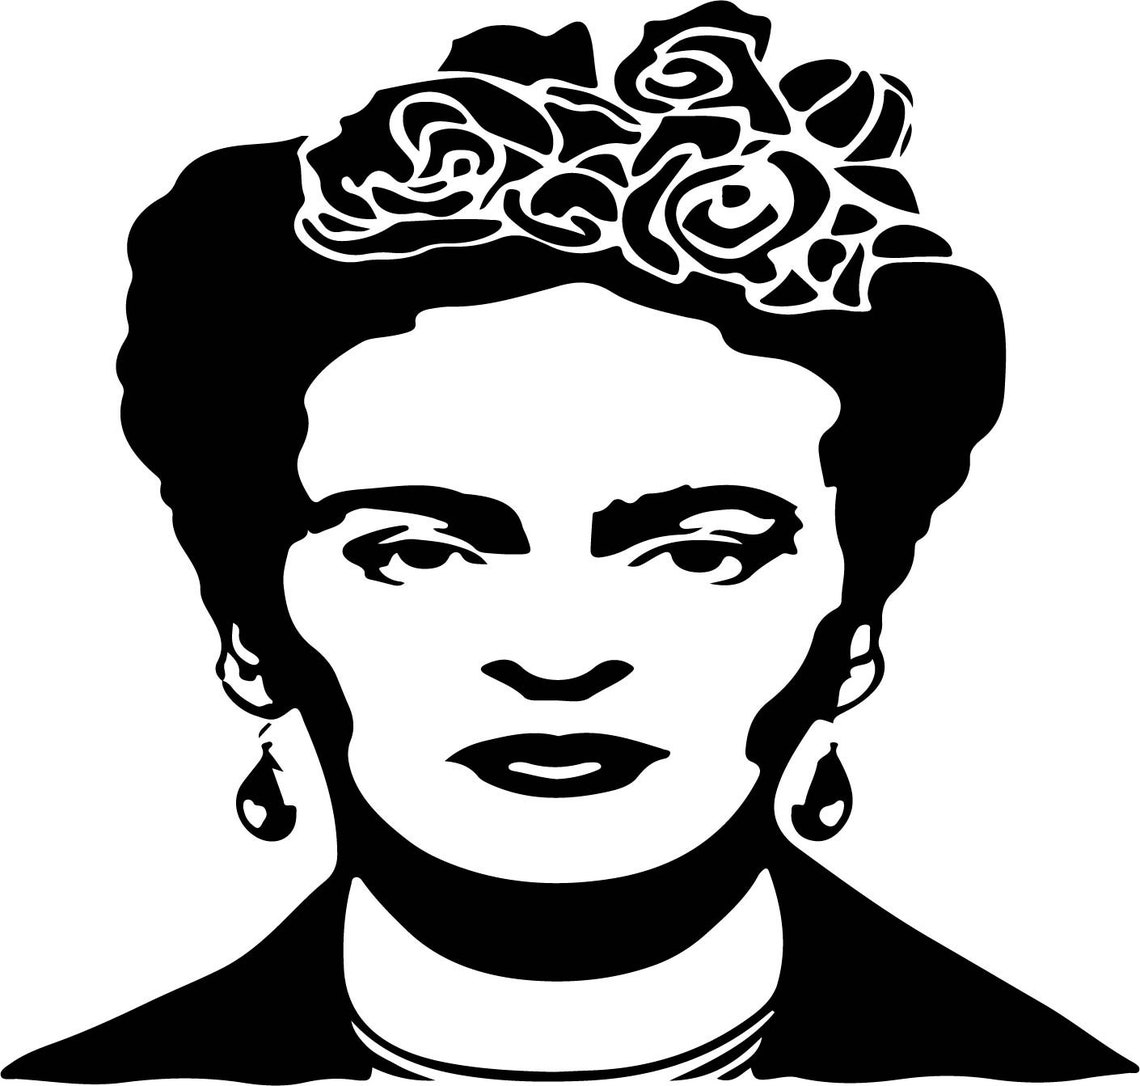 Frida kahlo svgpngjpeg eps dxfaipdf | Etsy